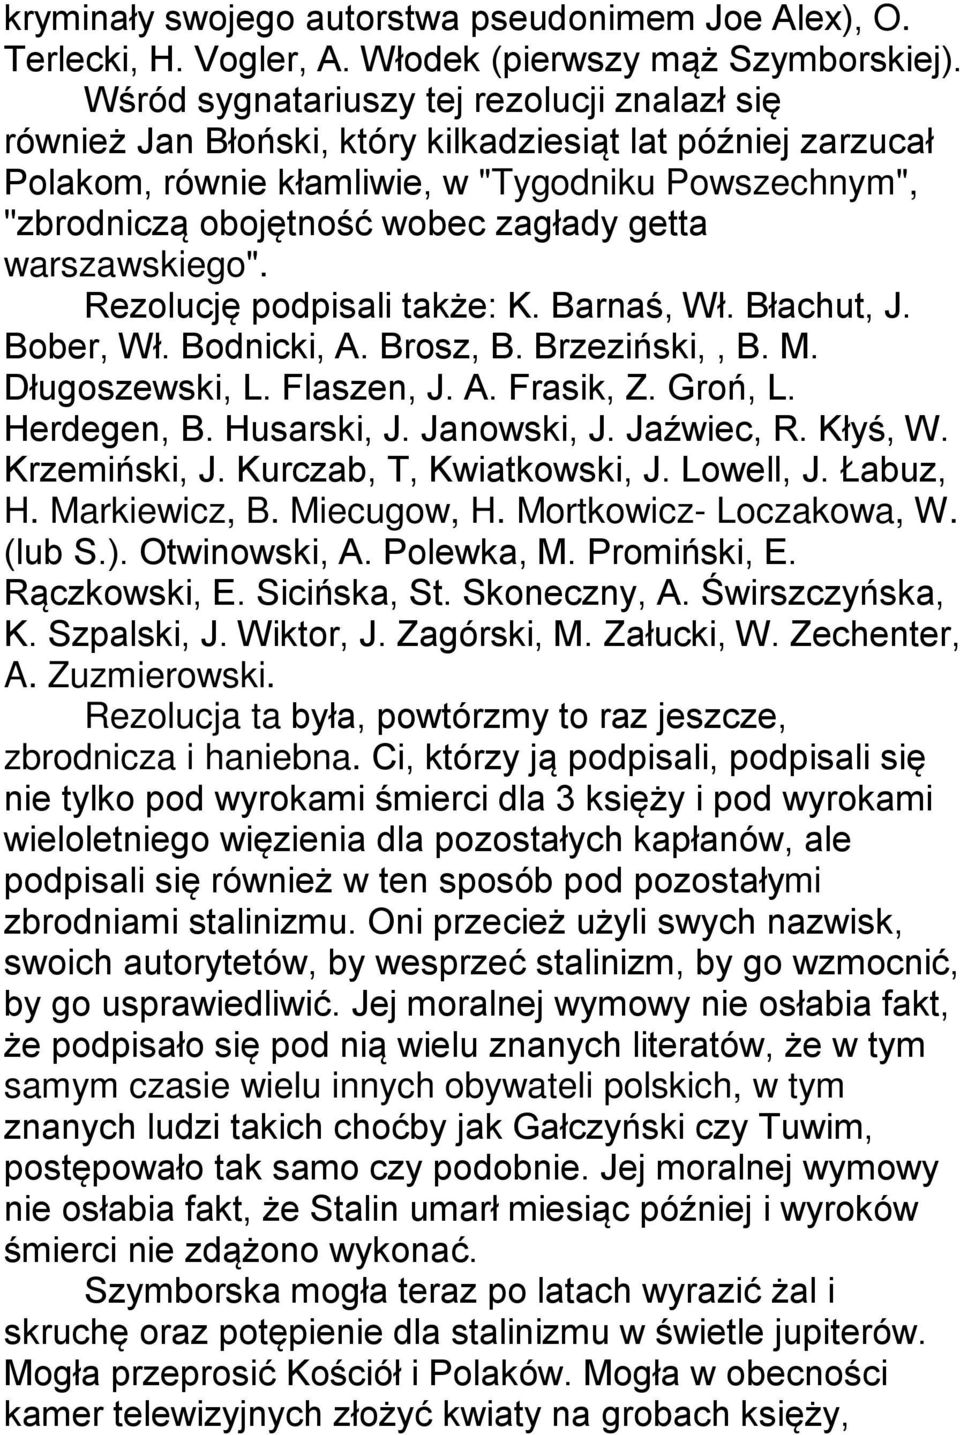 getta warszawskiego". Rezolucję podpisali także: K. Barnaś, Wł. Błachut, J. Bober, Wł. Bodnicki, A. Brosz, B. Brzeziński,, B. M. Długoszewski, L. Flaszen, J. A. Frasik, Z. Groń, L. Herdegen, B.